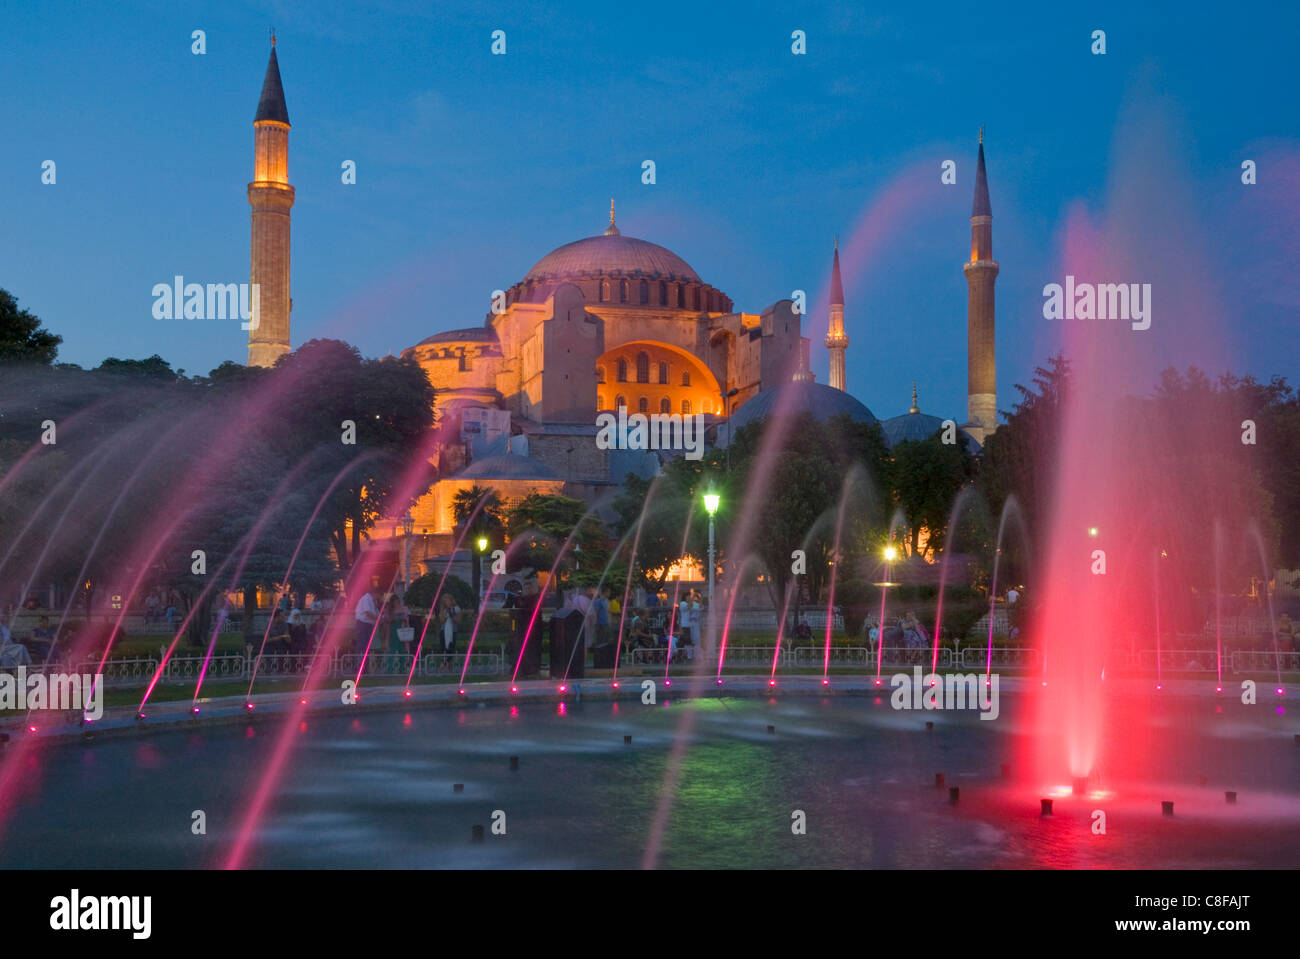 Die blaue Moschee (Sultan Ahmet Camii) mit Kuppeln und Minarette, Brunnen & Gärten im Vordergrund, Sultanahmet, Istanbul, Türkei Stockfoto